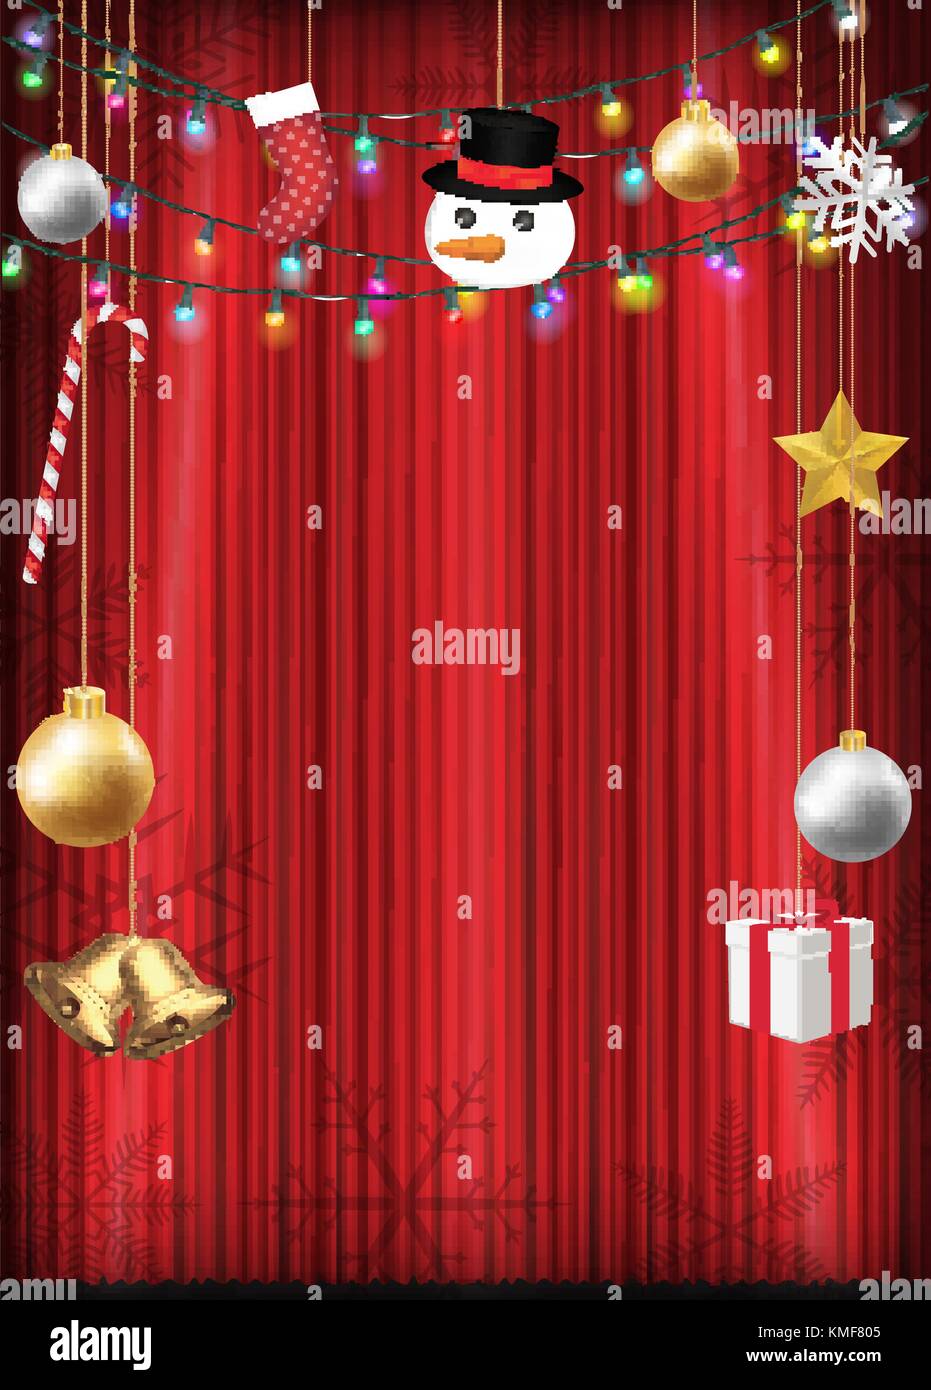 Objet de décoration de Noël accrocher au rideau rouge Illustration de Vecteur